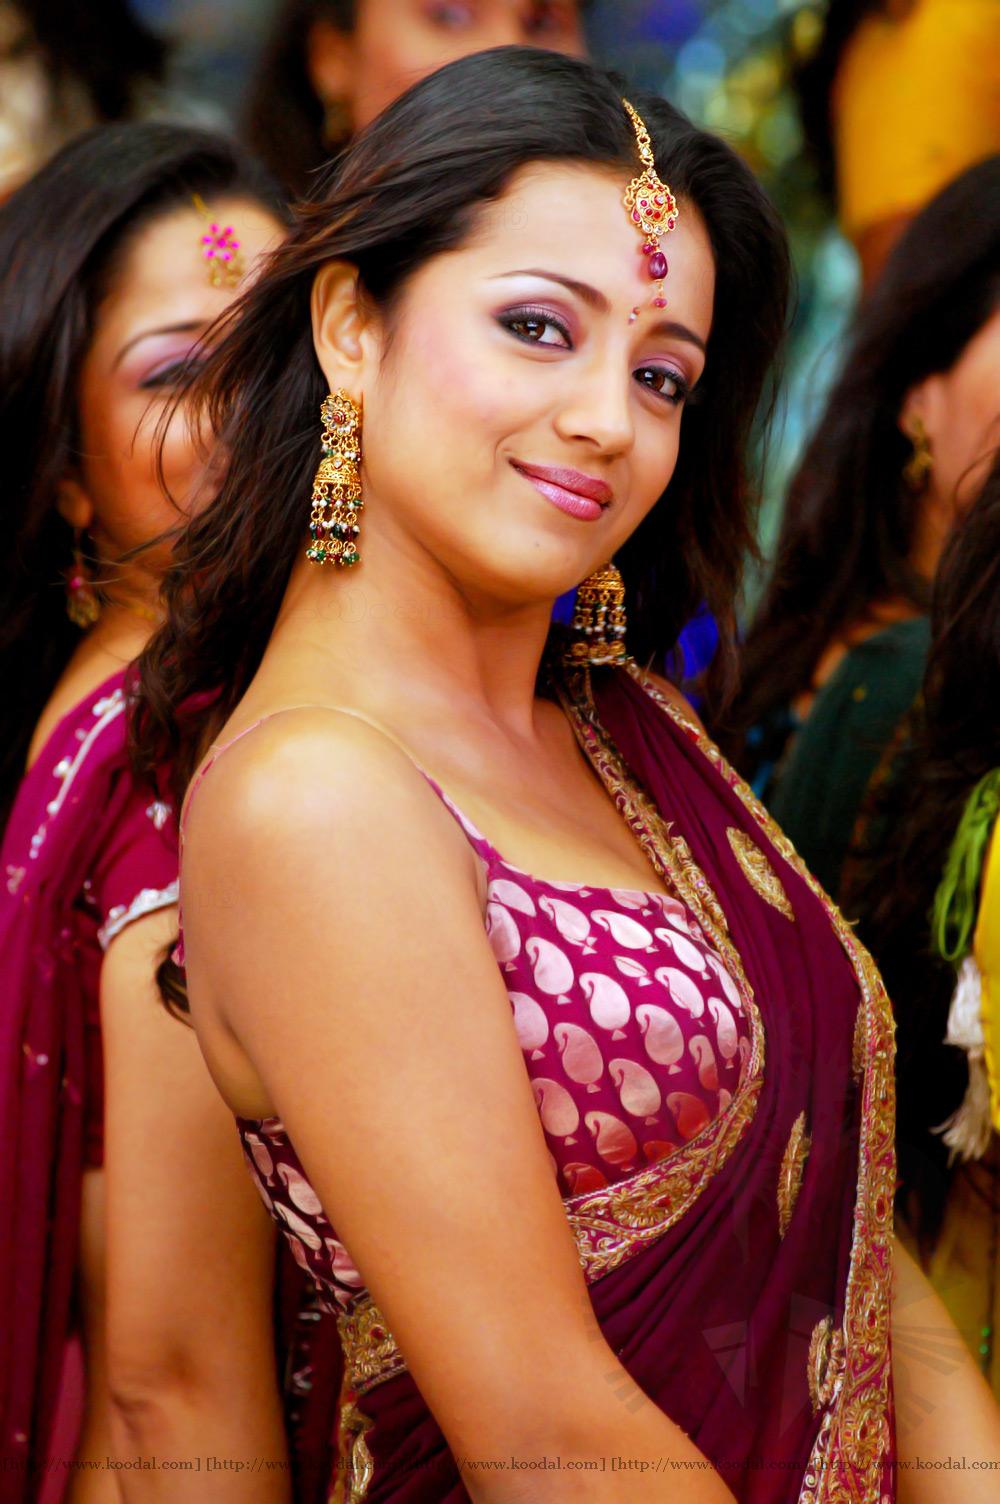 Trisha Tamil Actress Tamil Actress Trisha South Indian Actress Model